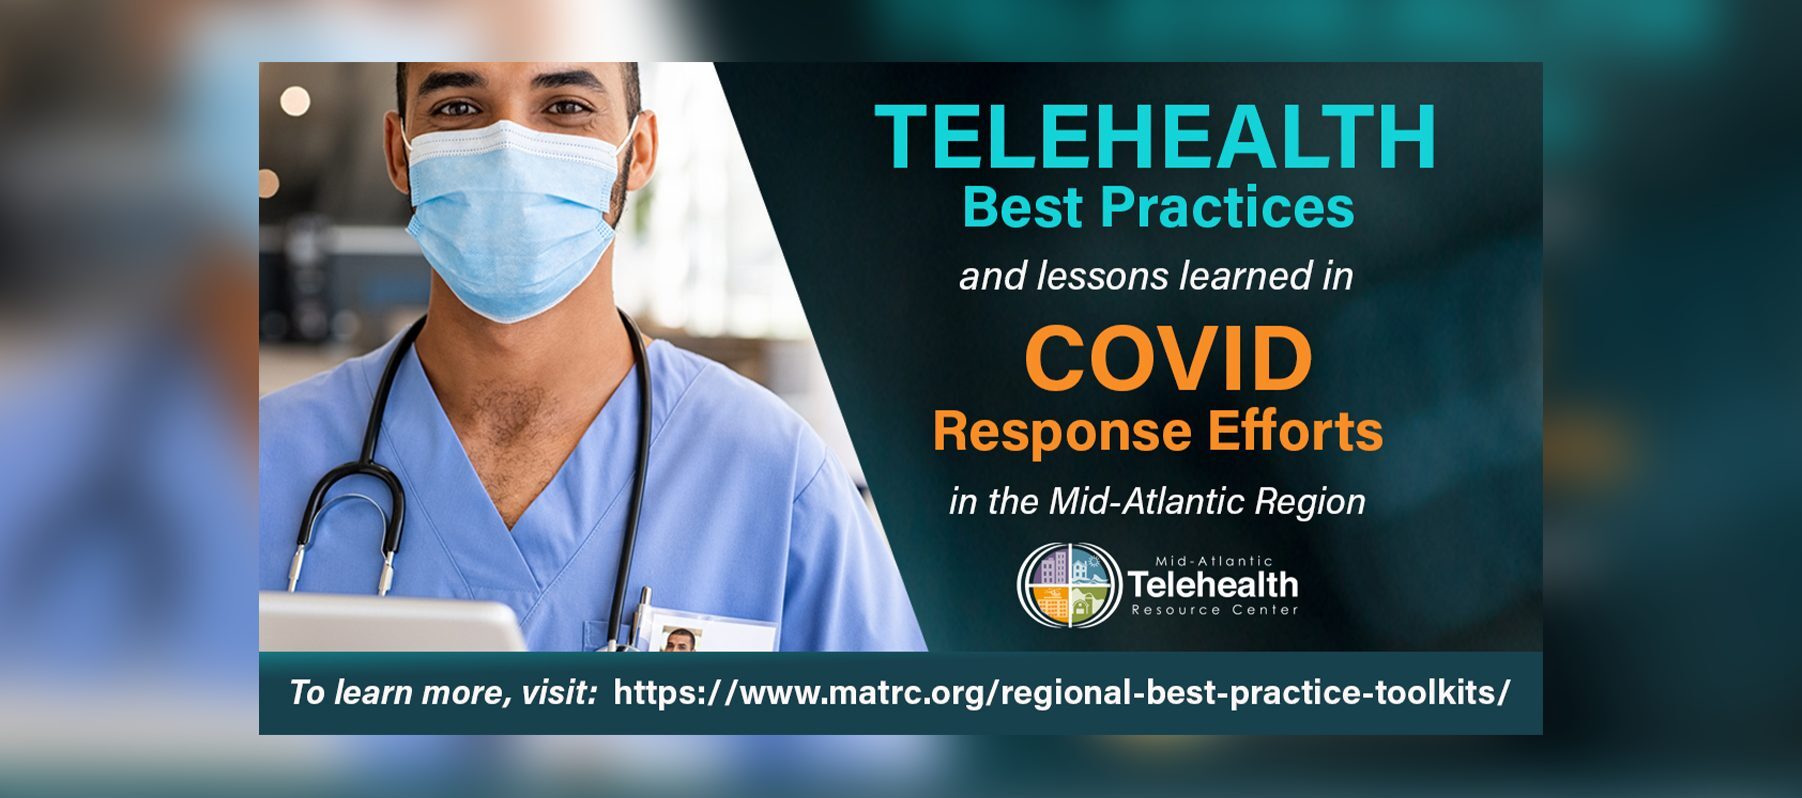 telehealth best practices